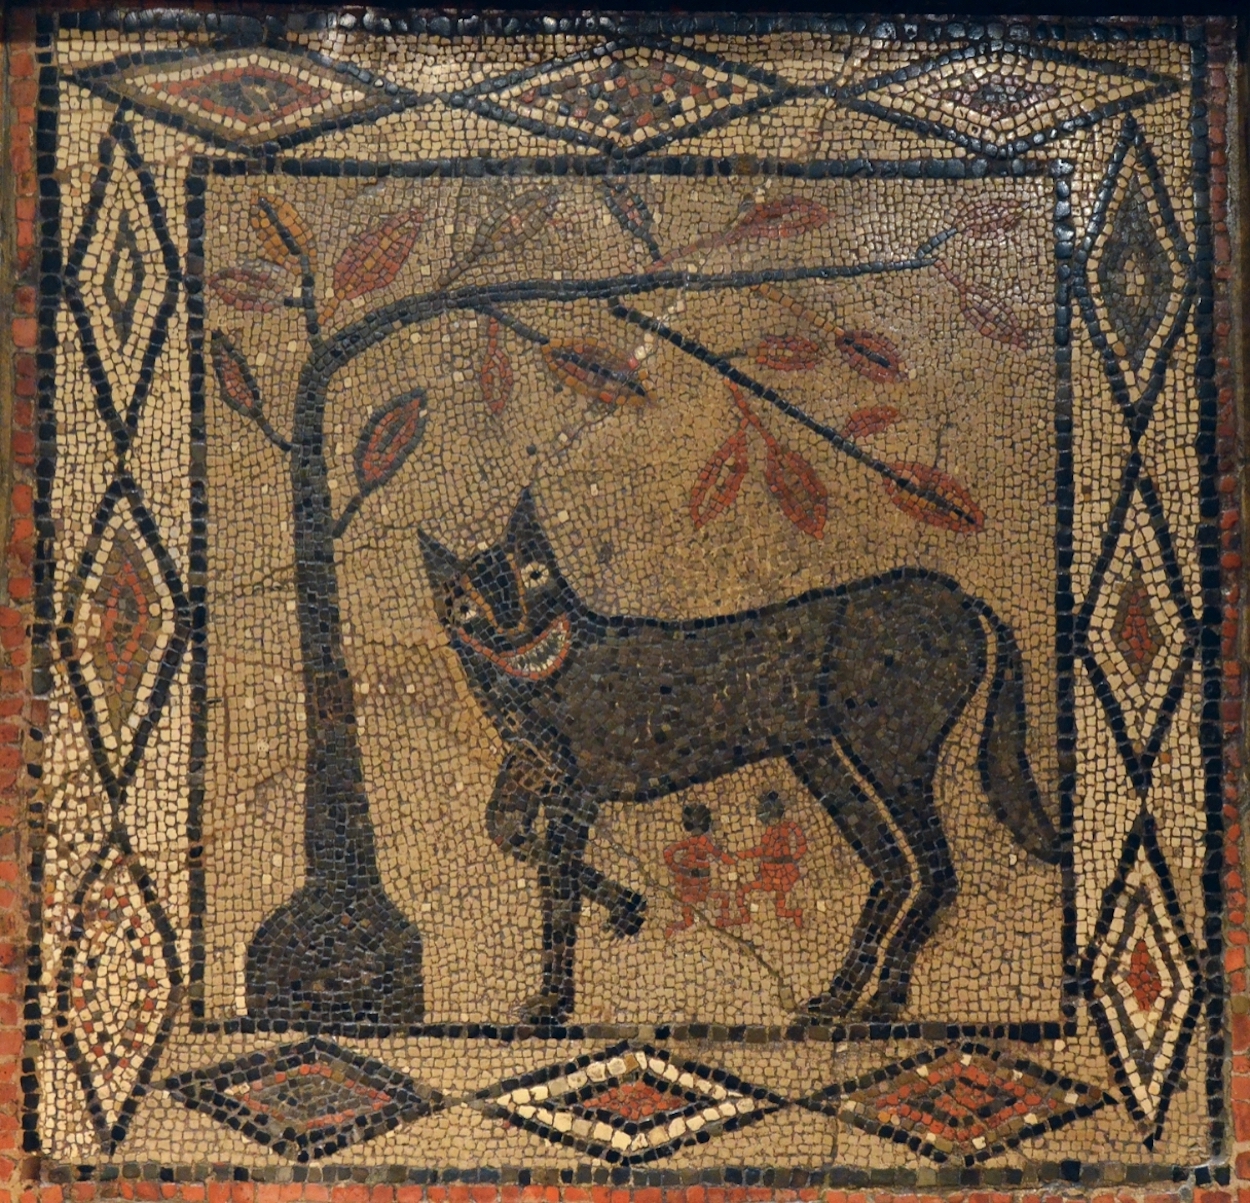 Wölfin mit Romulus und Remus by Unbekannter Künstler - ca. 300 n. Chr. Leeds City Museum